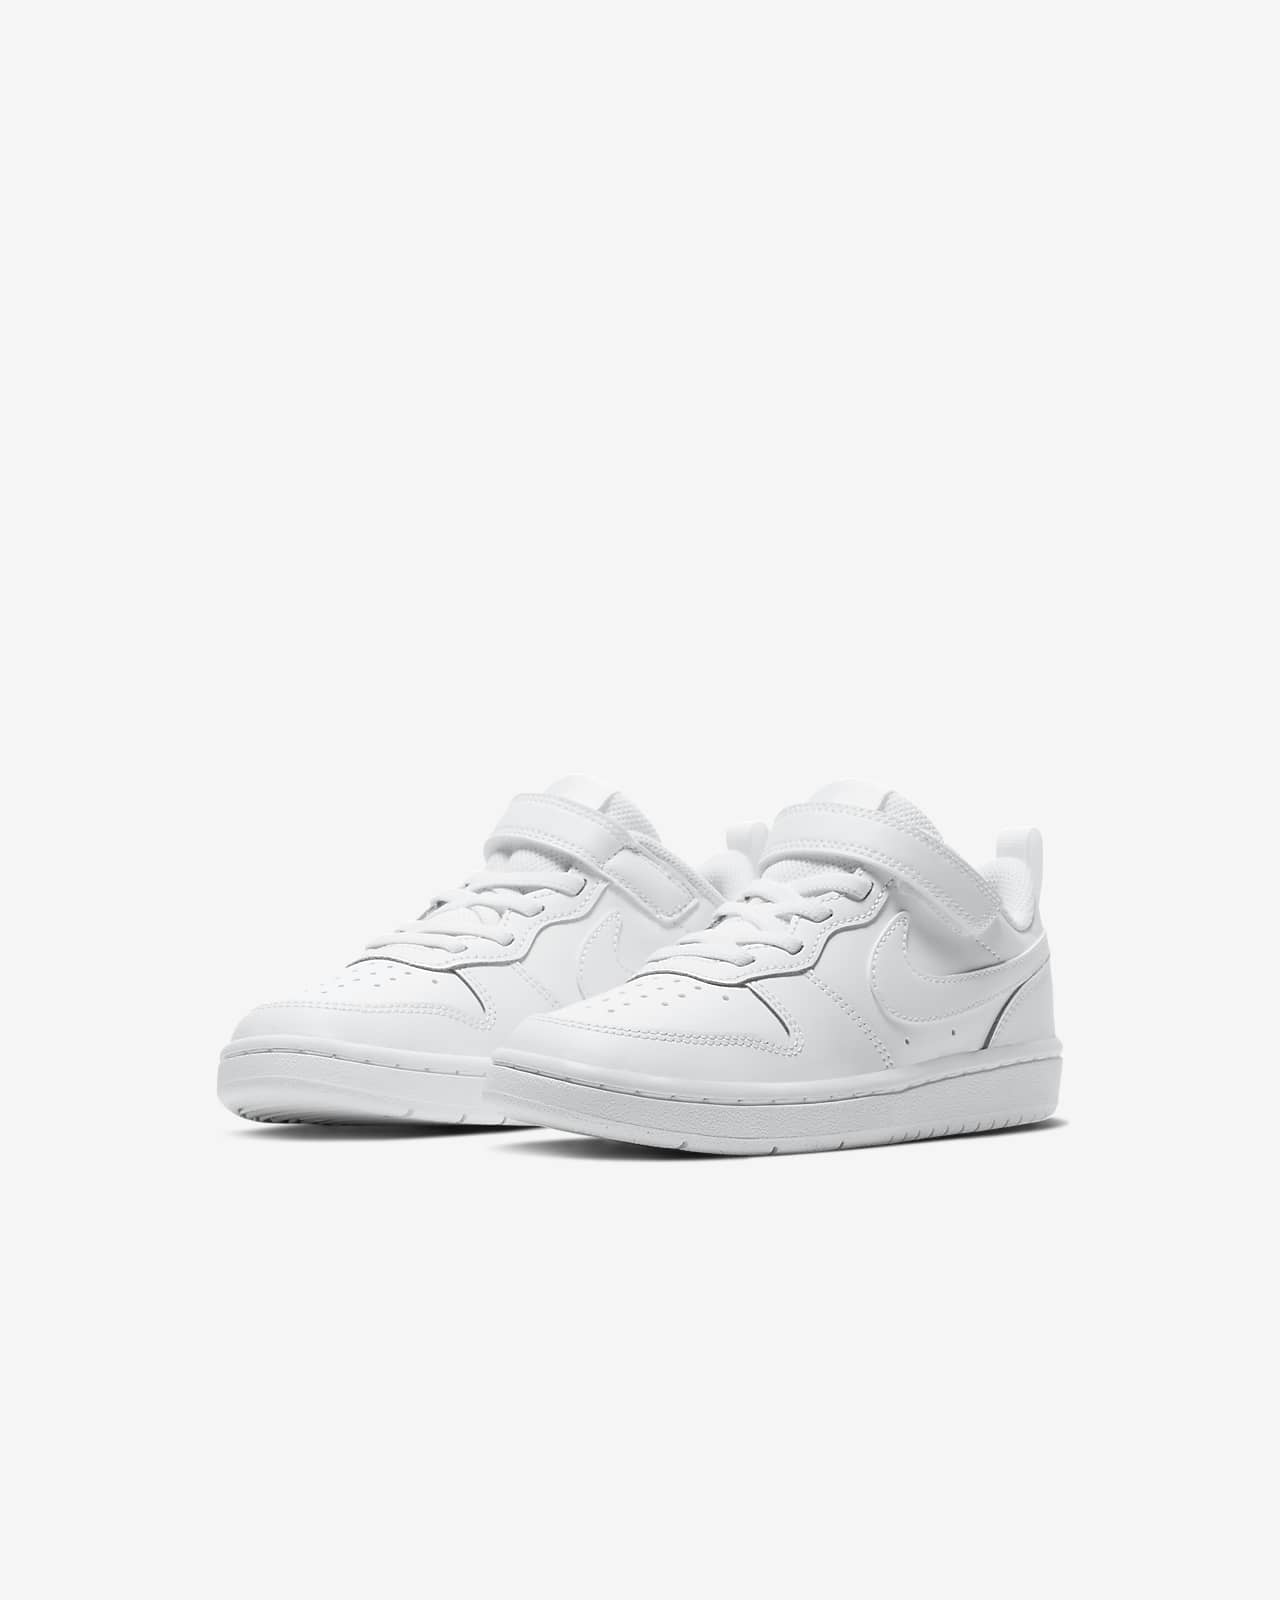 nike court borough low white sneakers